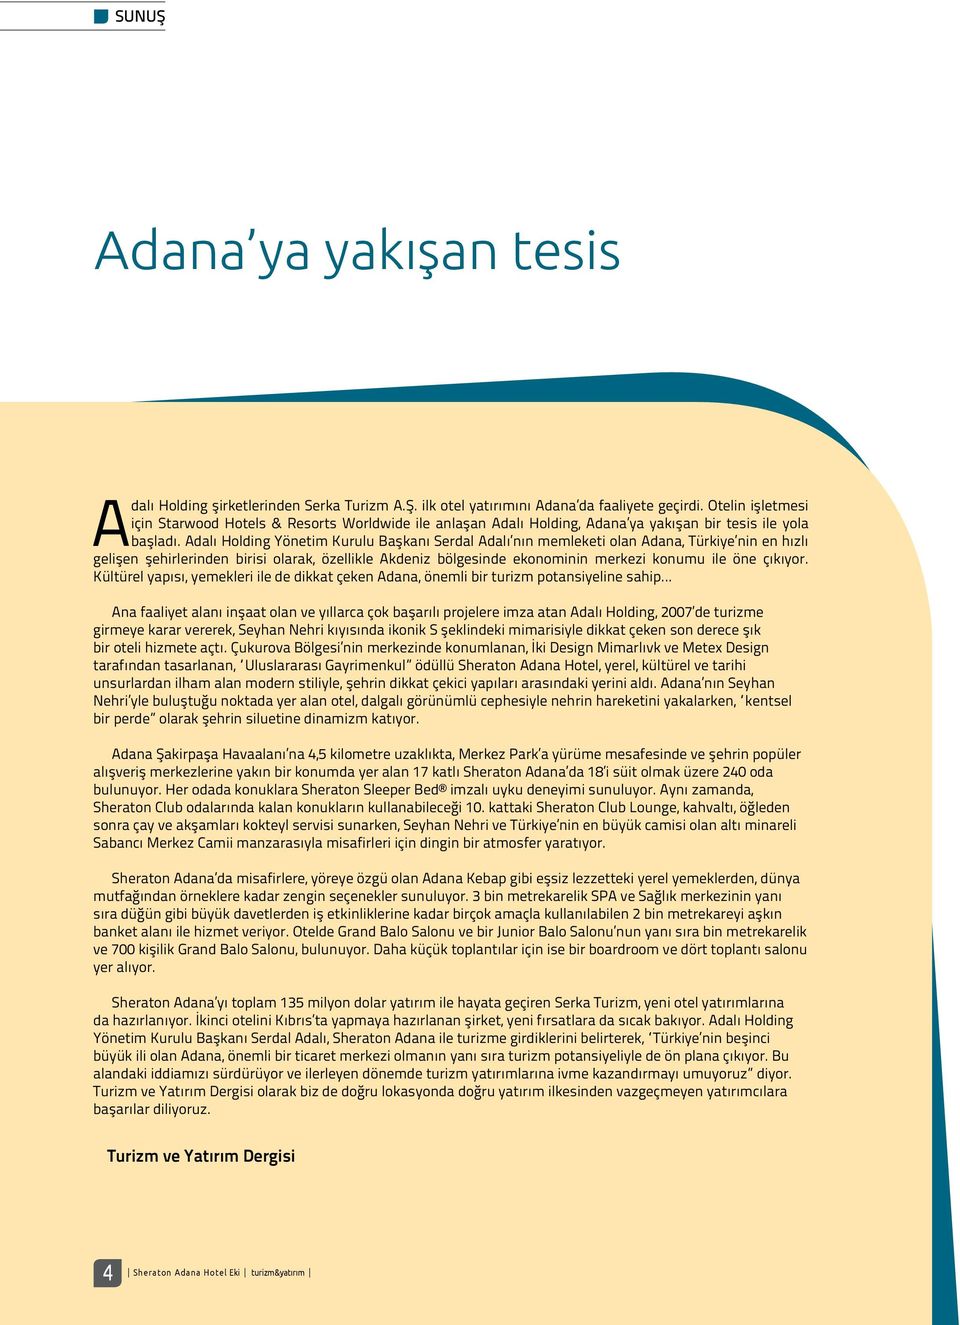 Adalı Holding Yönetim Kurulu Başkanı Serdal Adalı nın memleketi olan Adana, Türkiye nin en hızlı gelişen şehirlerinden birisi olarak, özellikle Akdeniz bölgesinde ekonominin merkezi konumu ile öne